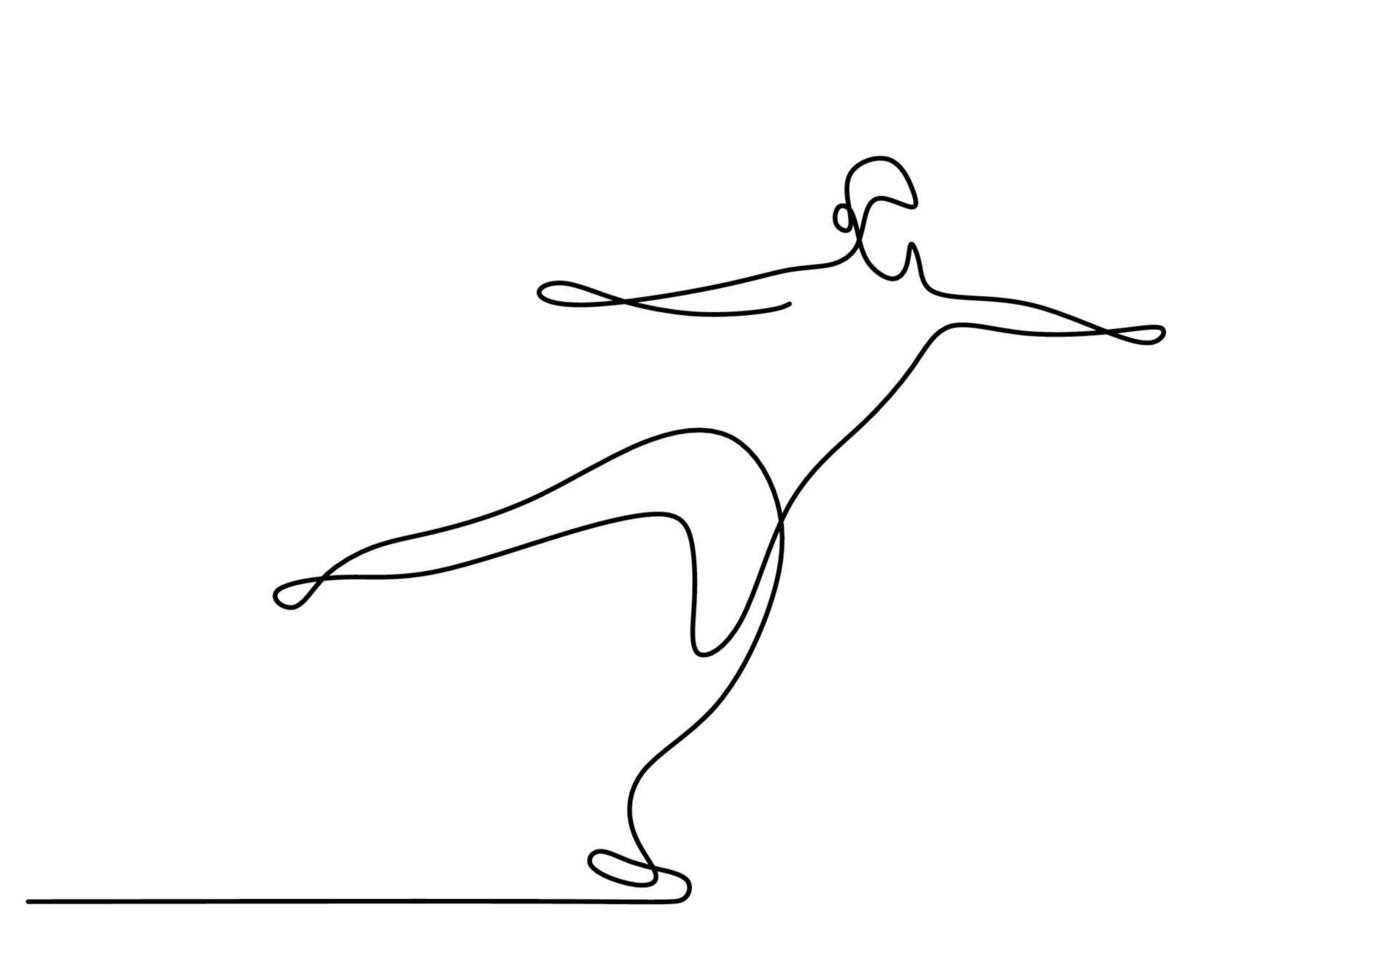 um desenho de linha contínua do cara da patinação artística. jovem feliz jogando patinação no gelo na área de gelo enquanto dança livre. conceito de esporte de inverno isolado no fundo branco. ilustração vetorial vetor